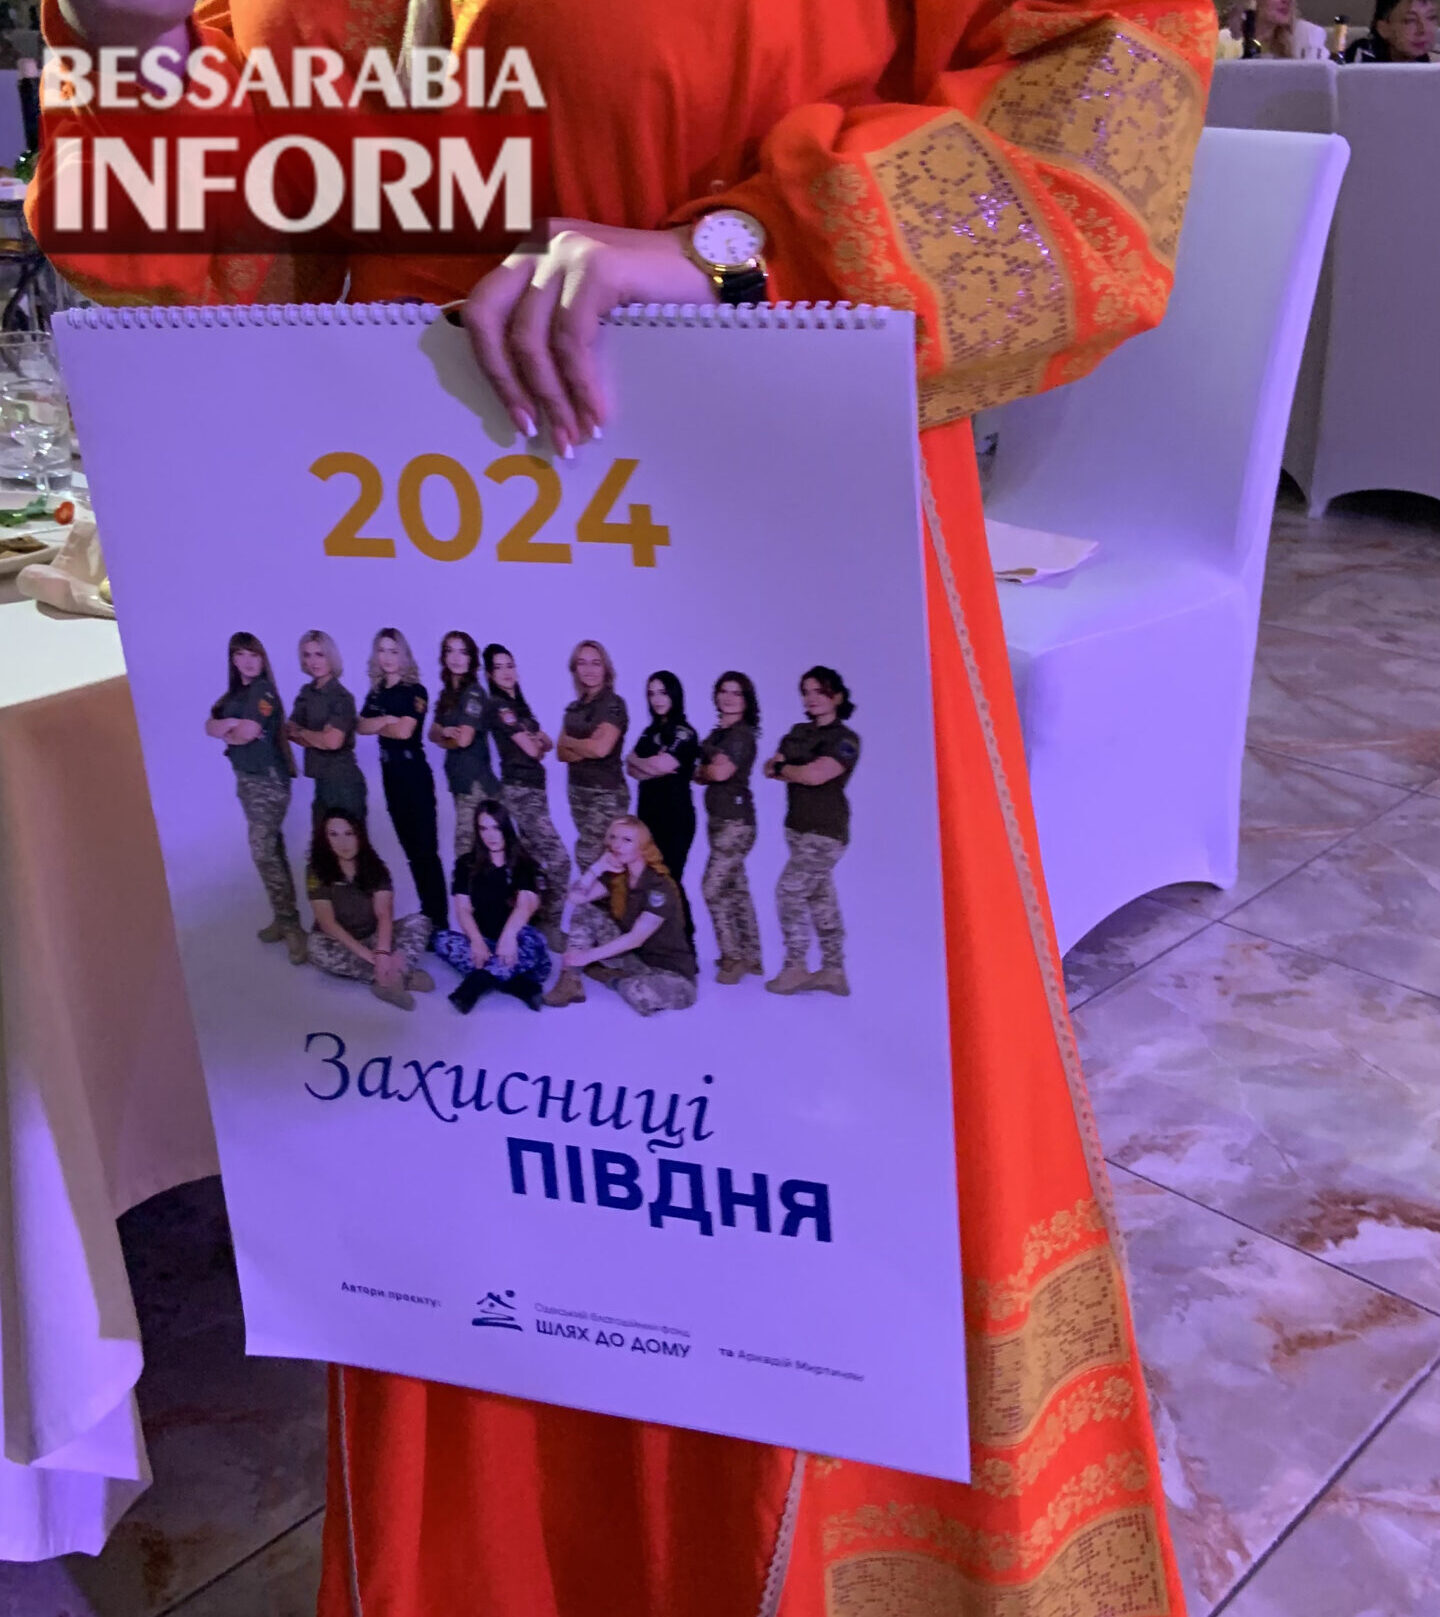 В Измаиле прошли фотовыставка и благотворительный проект в рамках Международного благотворительного проекта "Несокрушимые женщины Украины" (фото)